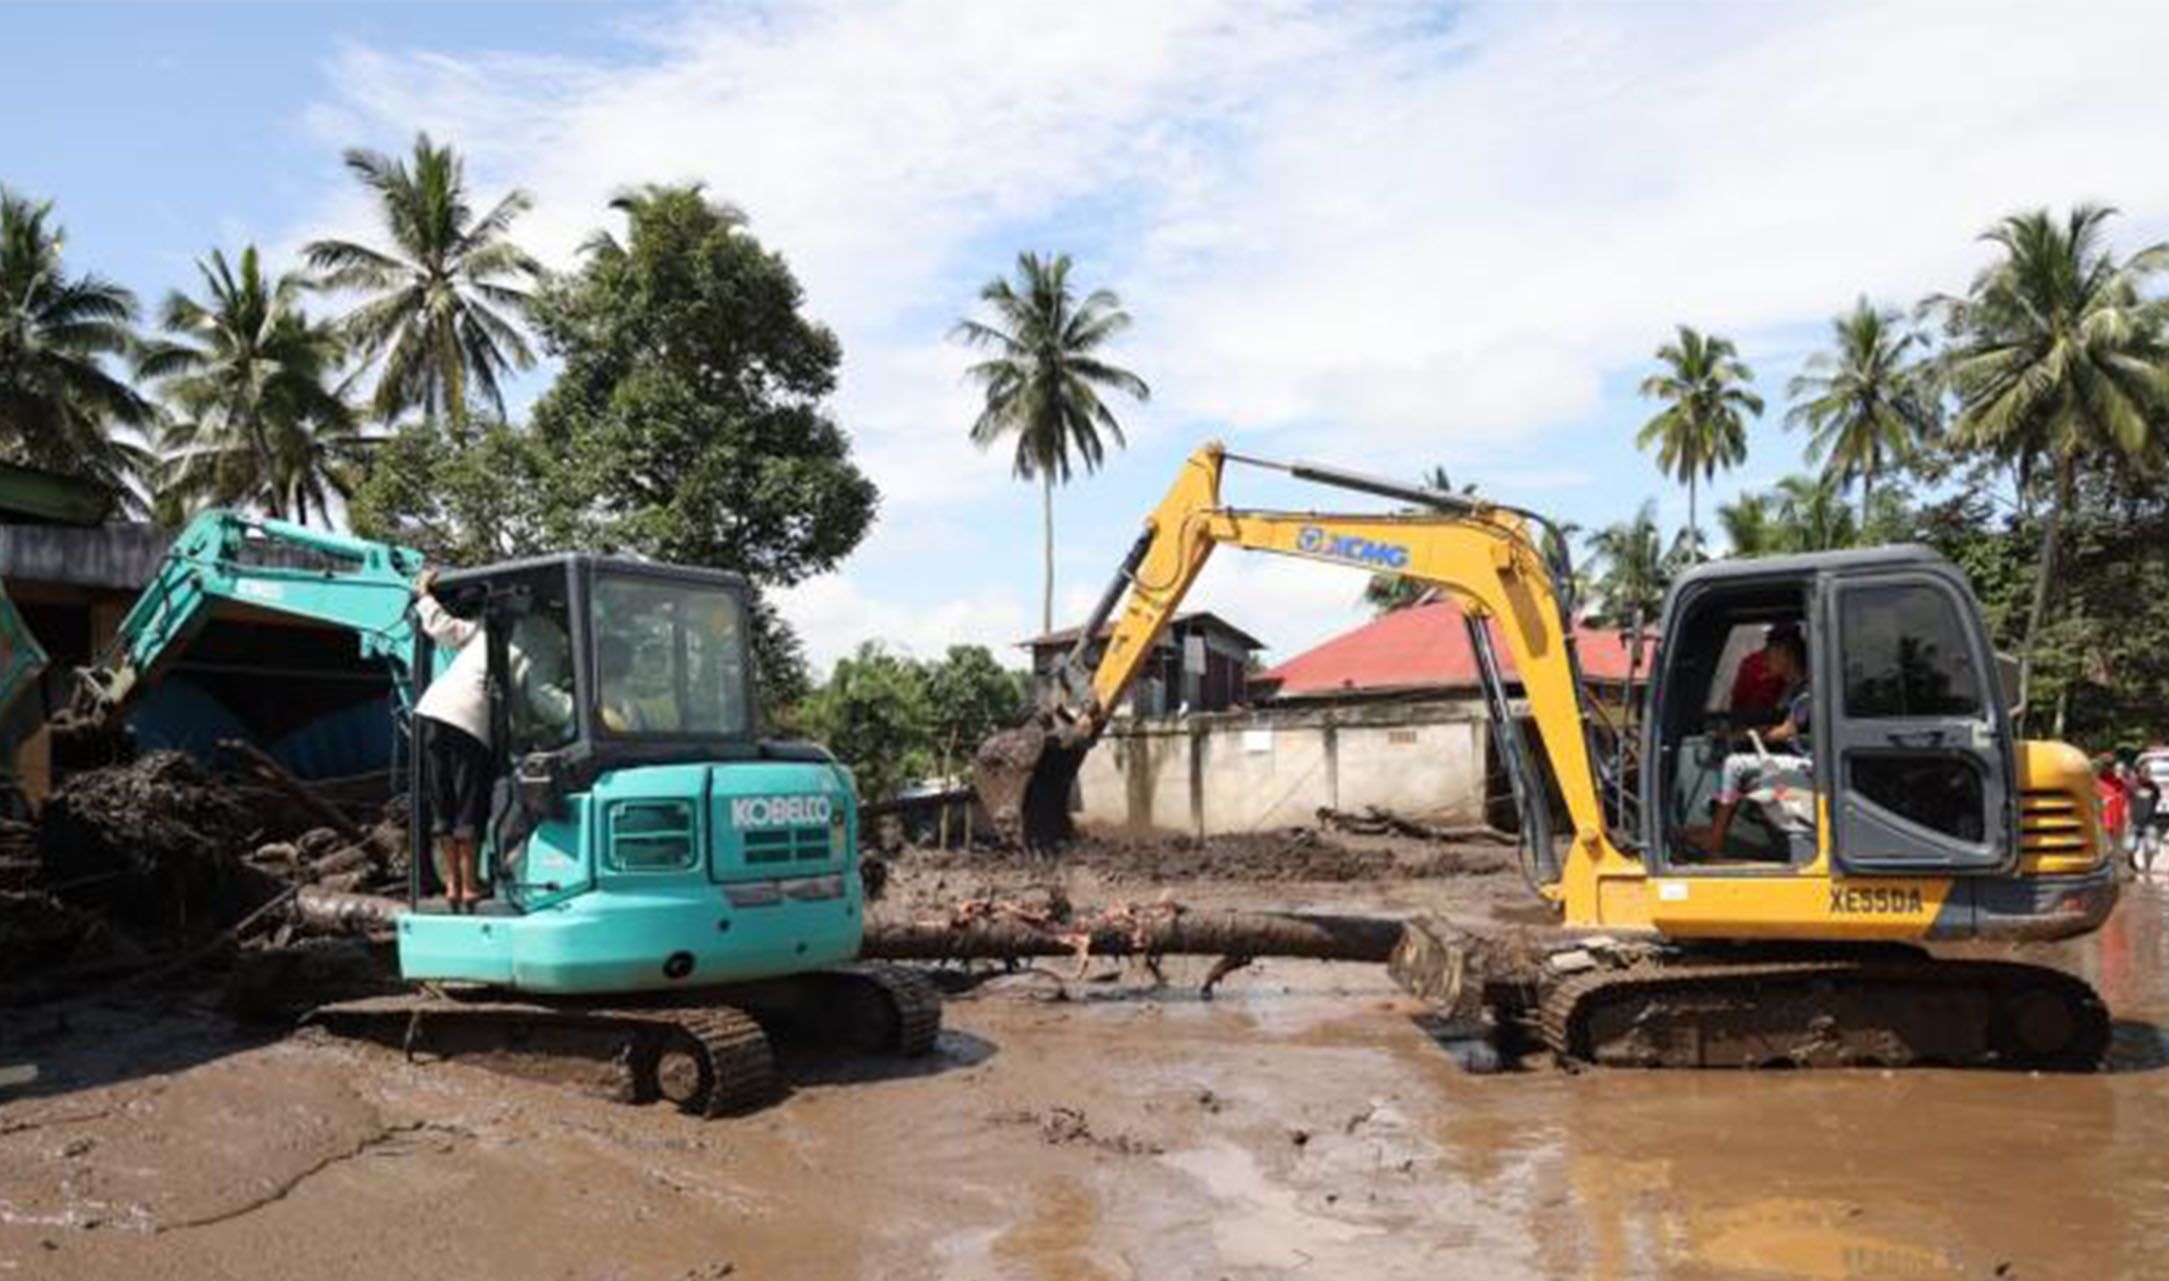 Kabupaten Tanah Datar. Sedikitnya 56 rumah warga Nagari III Koto terdampak bencana banjir dan air bah. Banjir Bandang dan Lahar Dinging Gunung Marapi